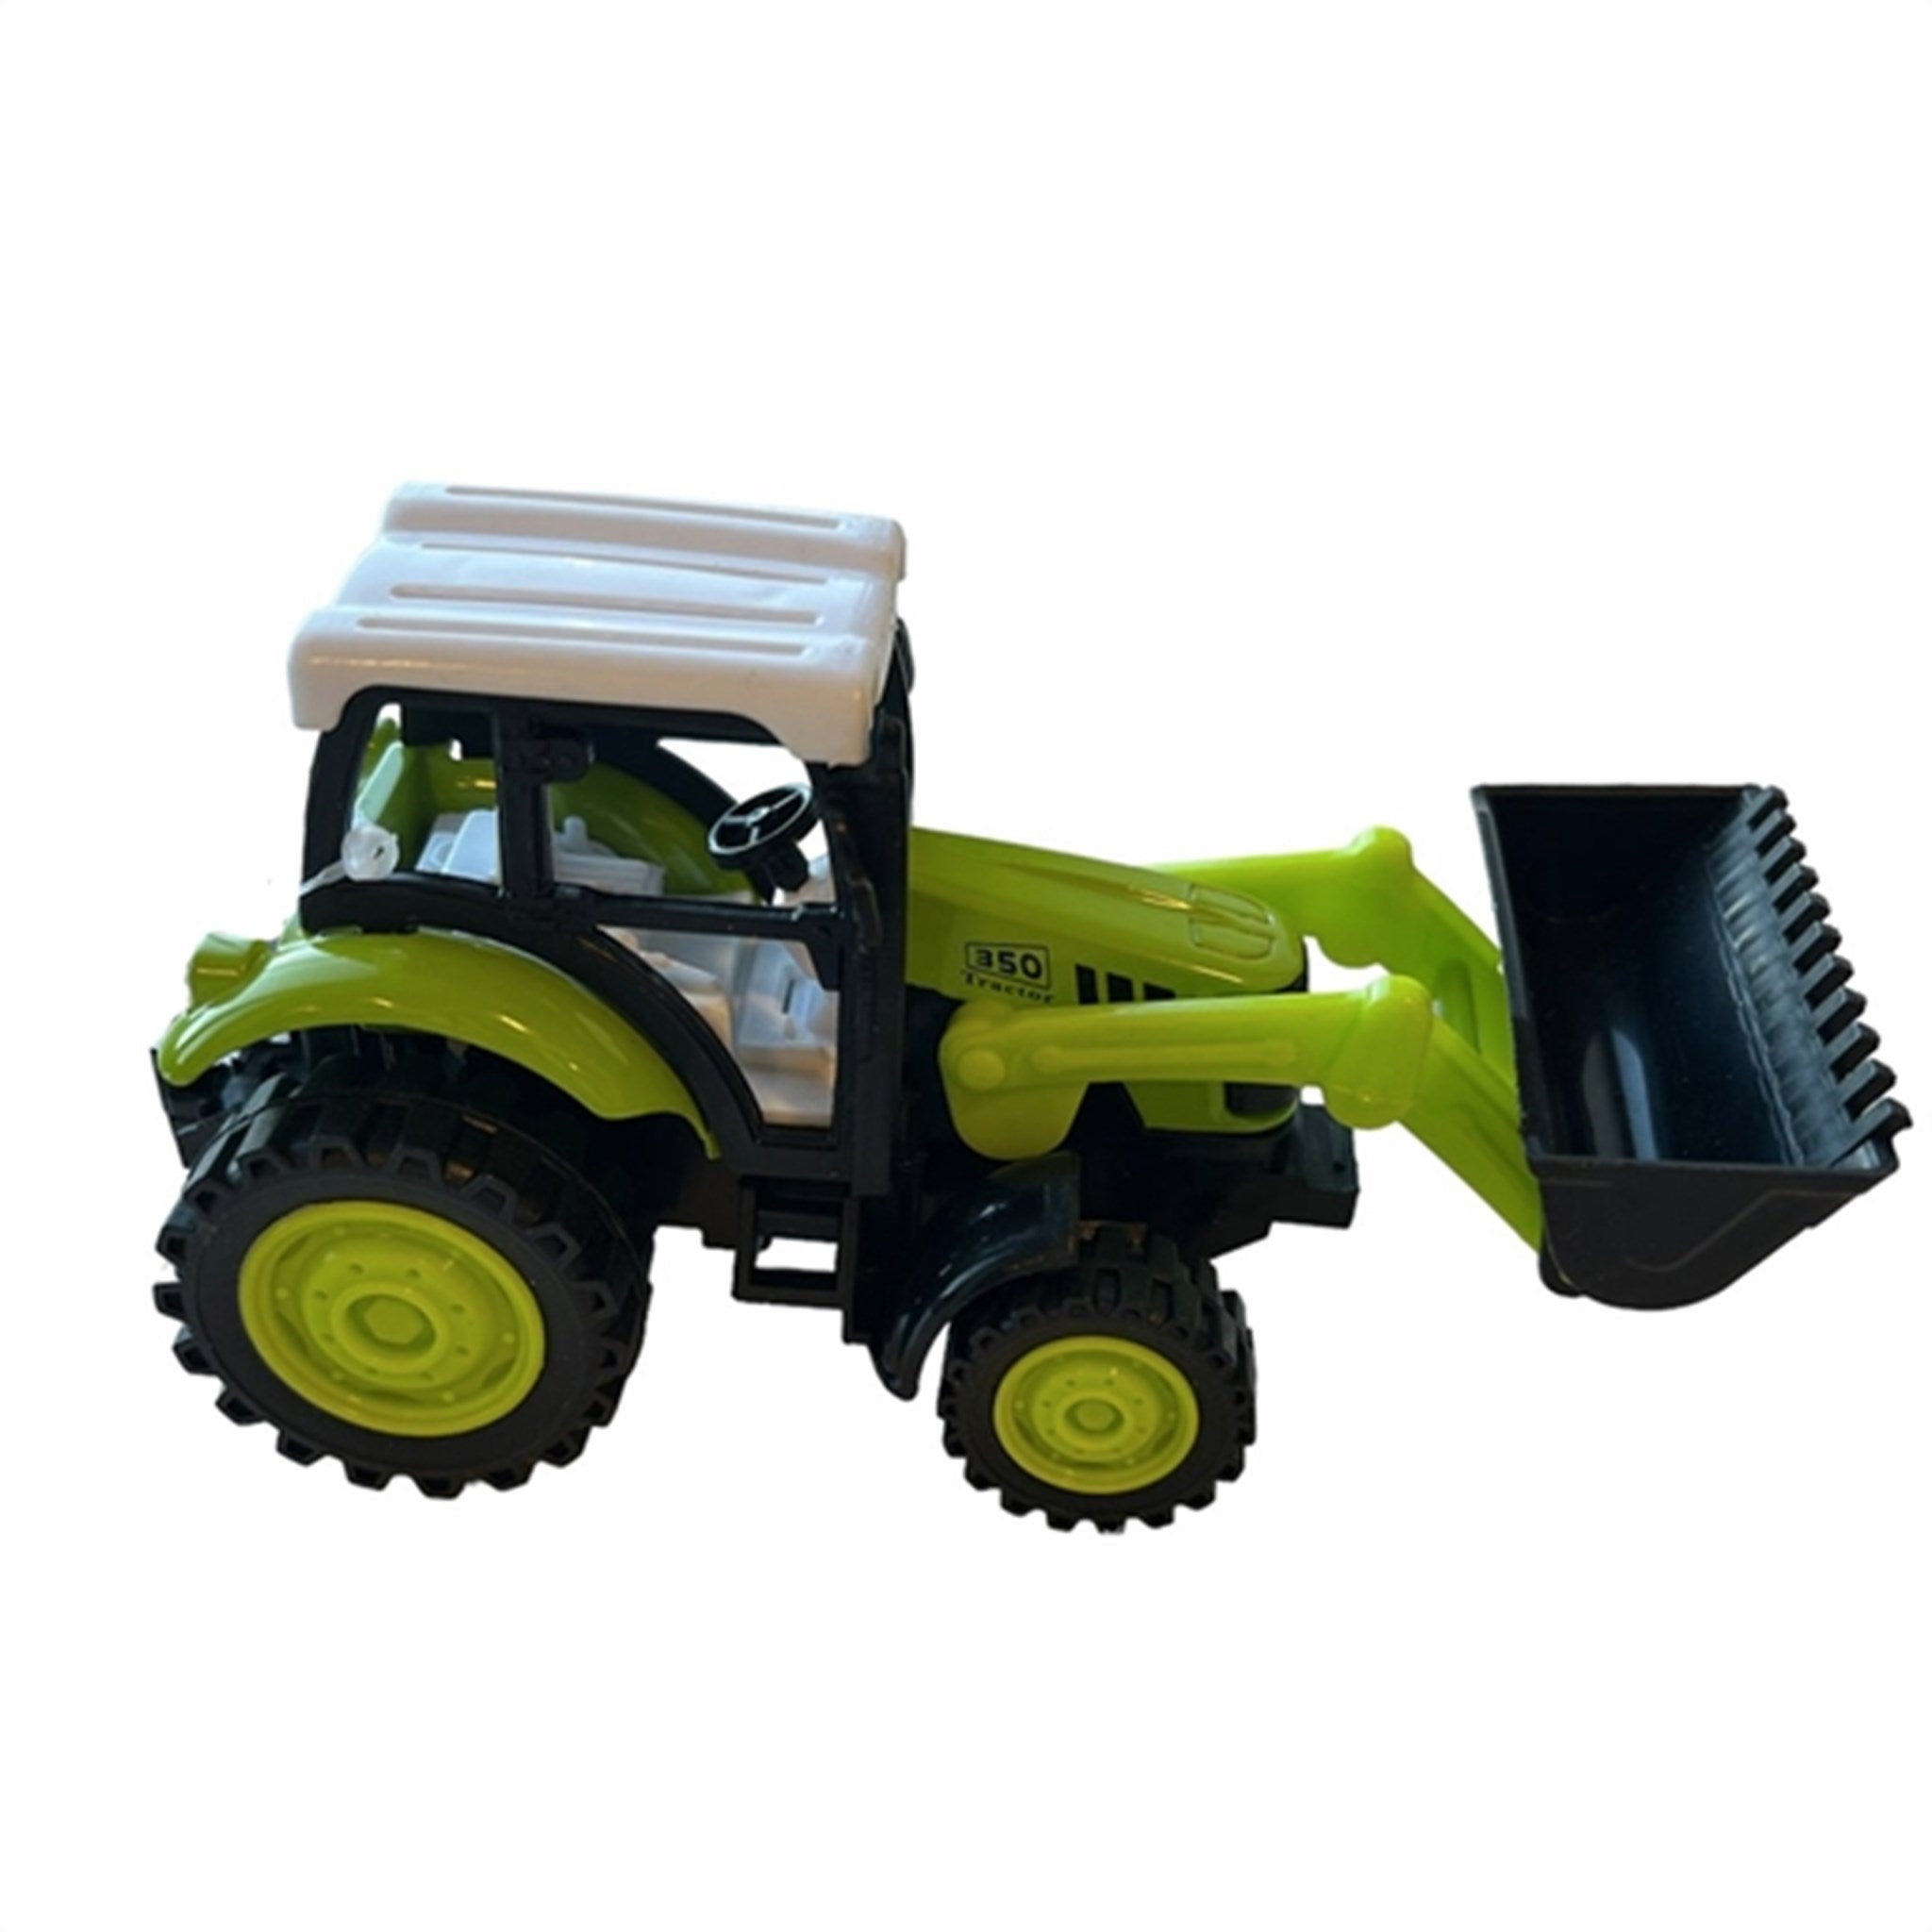 Magni Traktor Med Frontlæsser - Lys Grøn